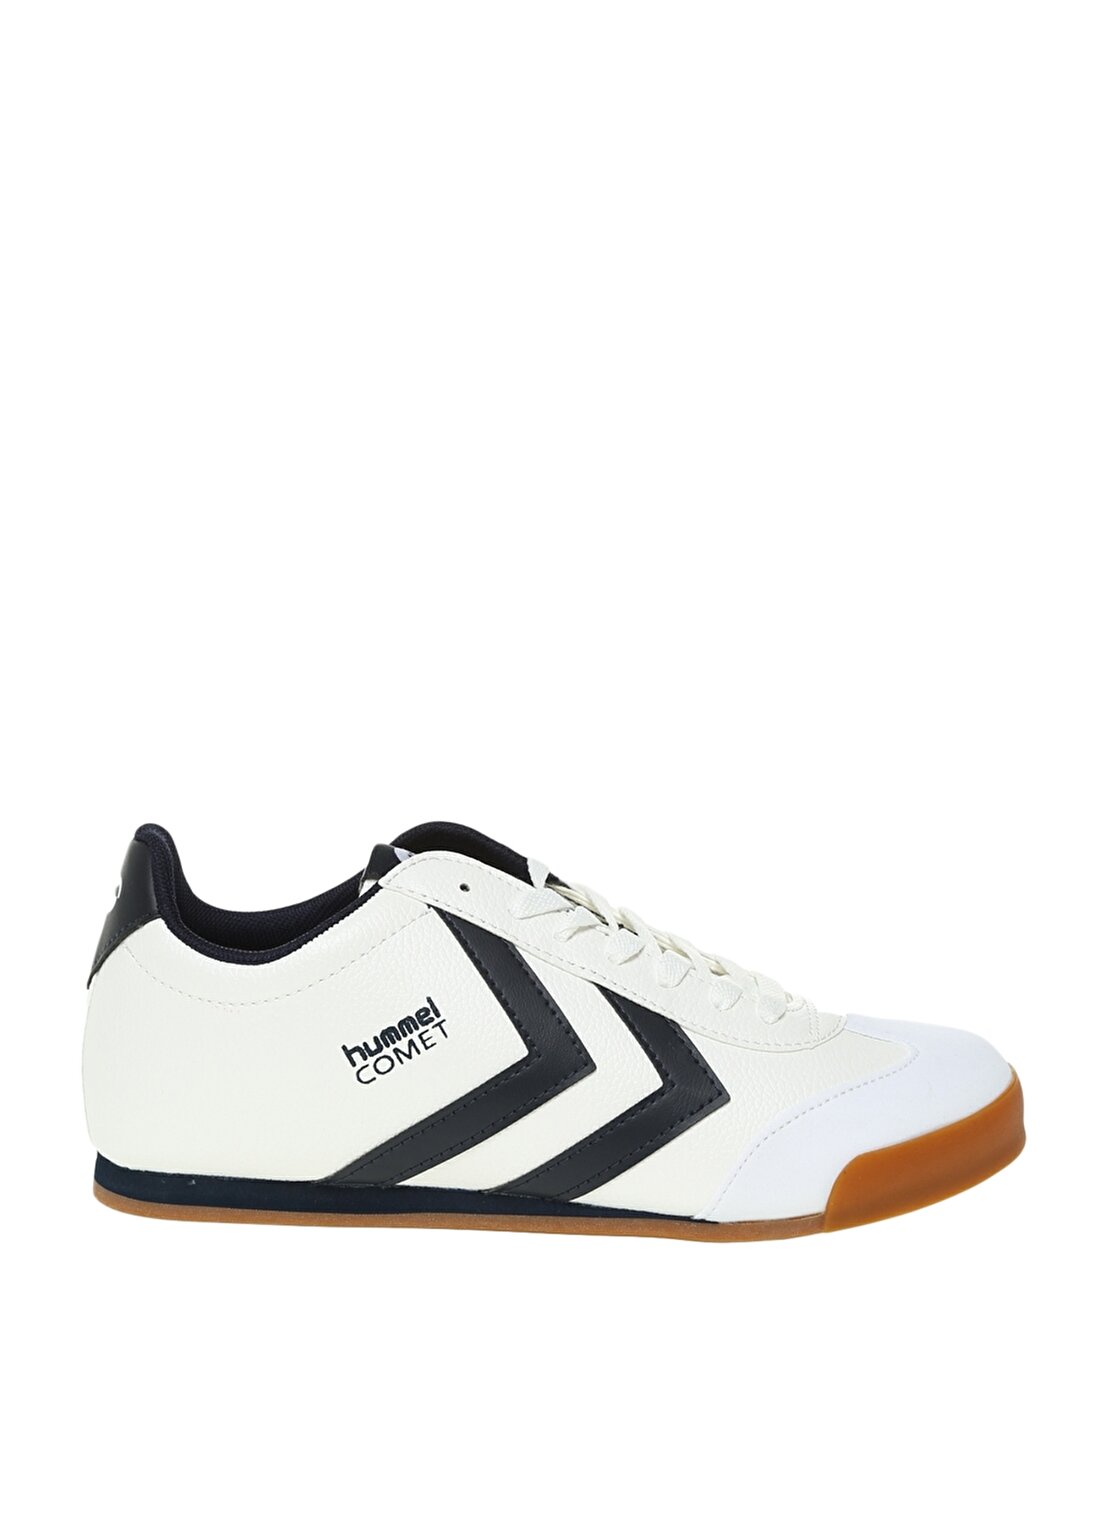 Hummel COMET Beyaz Kadın Lifestyle Ayakkabı 209061-9001